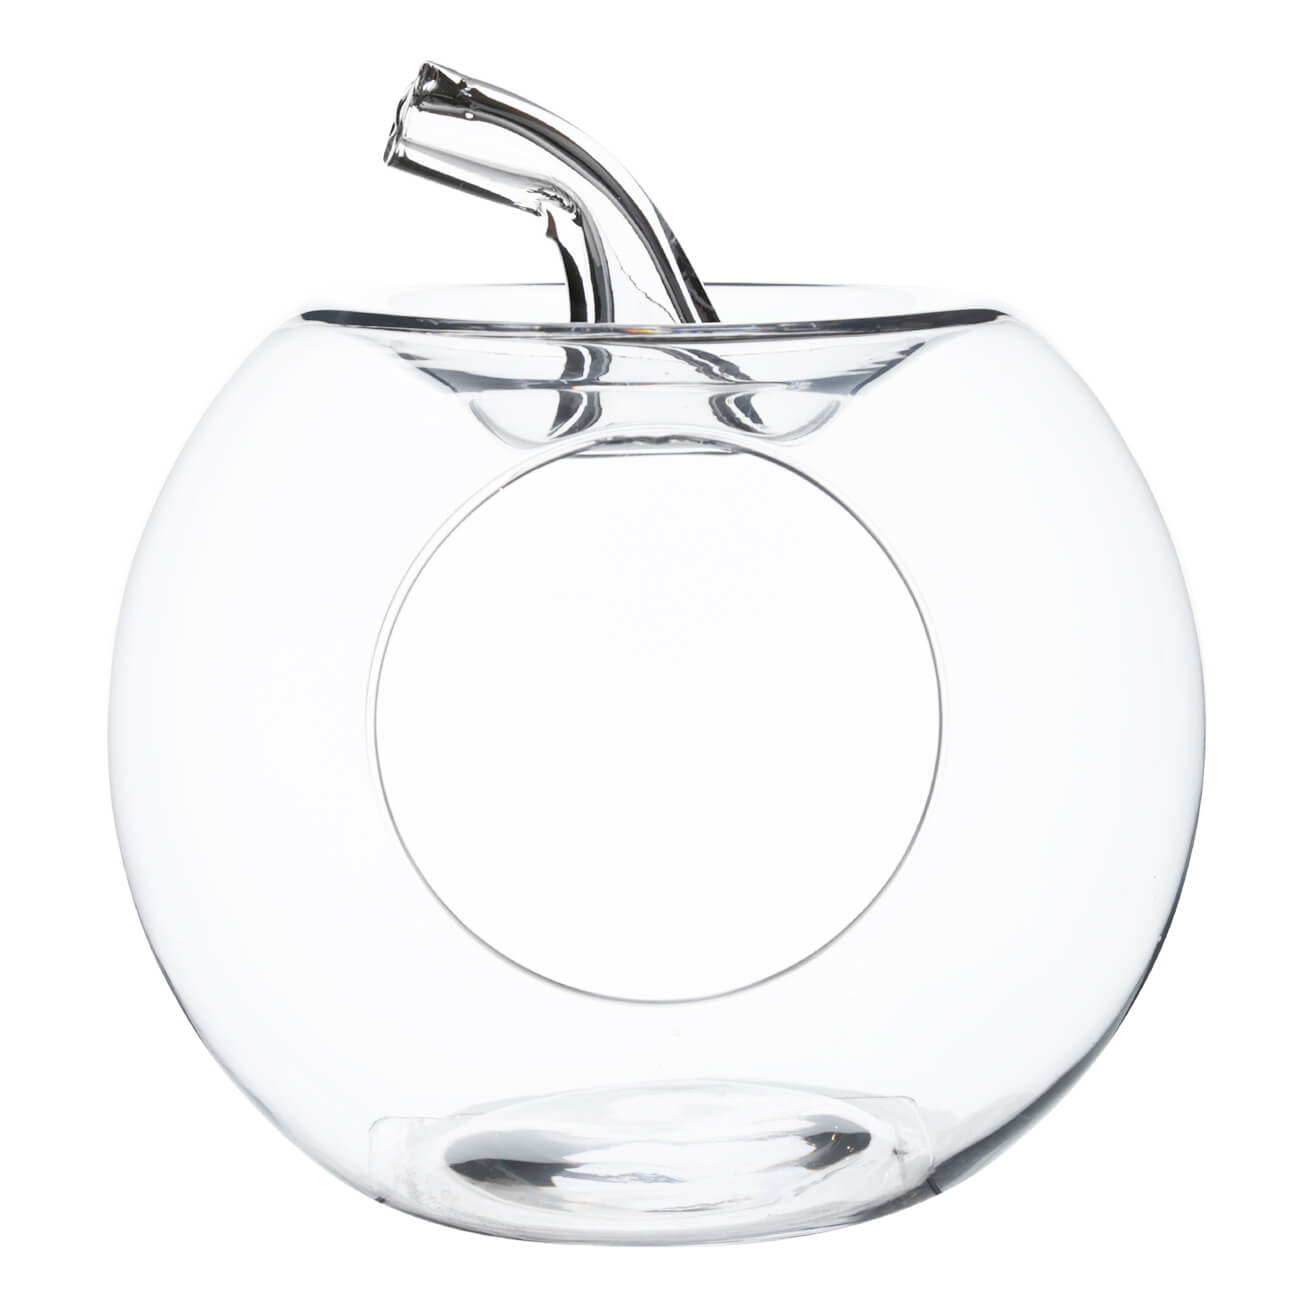 Конфетница, 27х24 см, стекло, Яблоко, Clear чайник заварочный 650 мл на подставке стекло б пробка clear